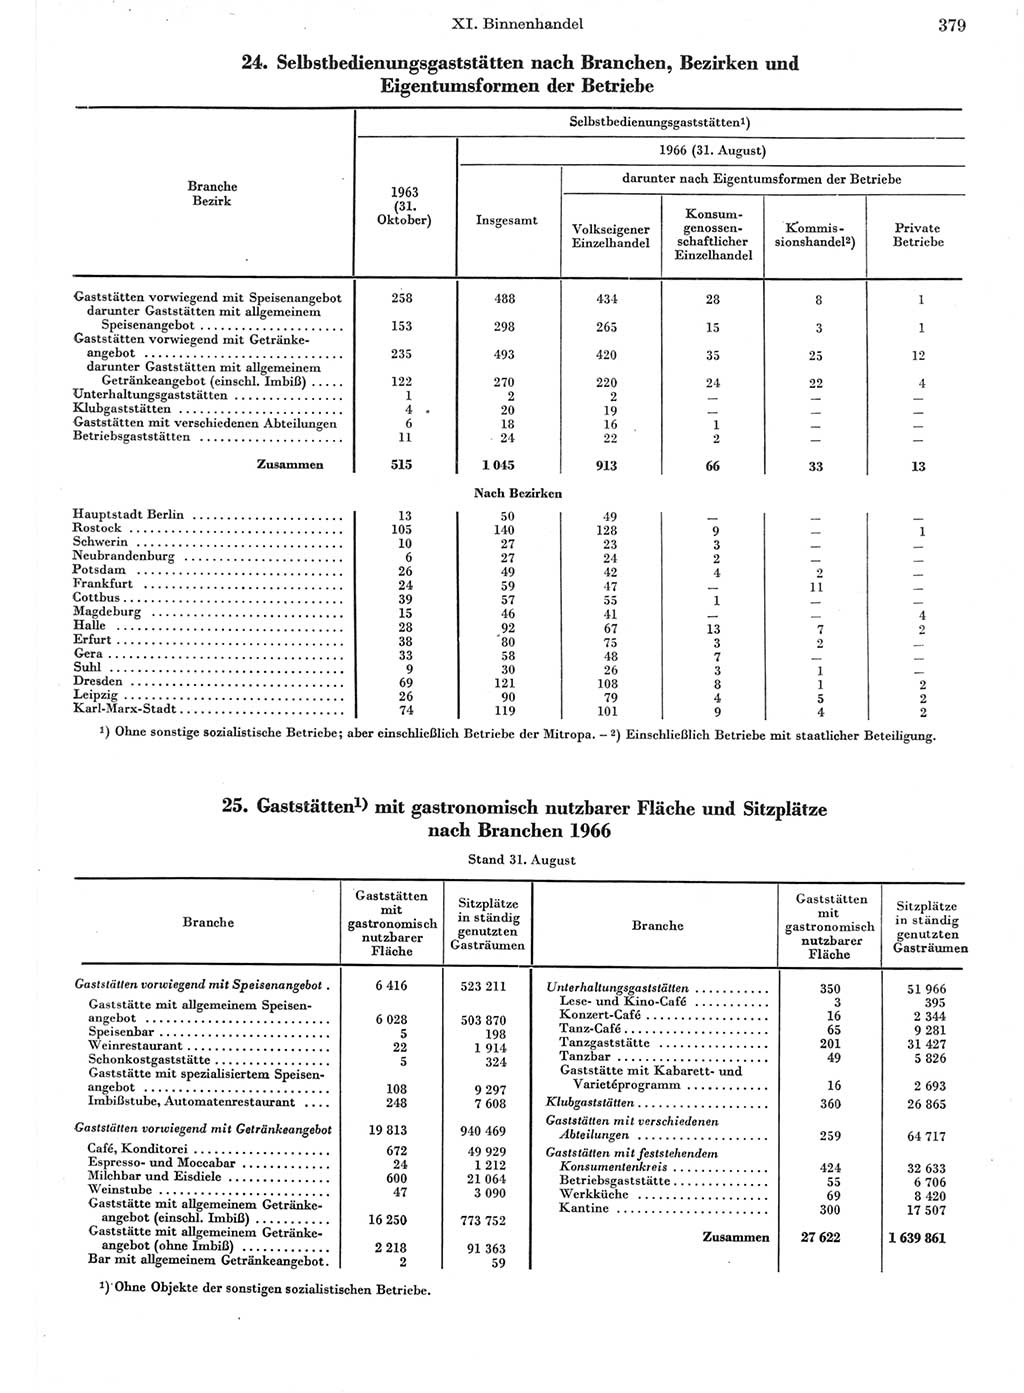 Statistisches Jahrbuch der Deutschen Demokratischen Republik (DDR) 1967, Seite 379 (Stat. Jb. DDR 1967, S. 379)